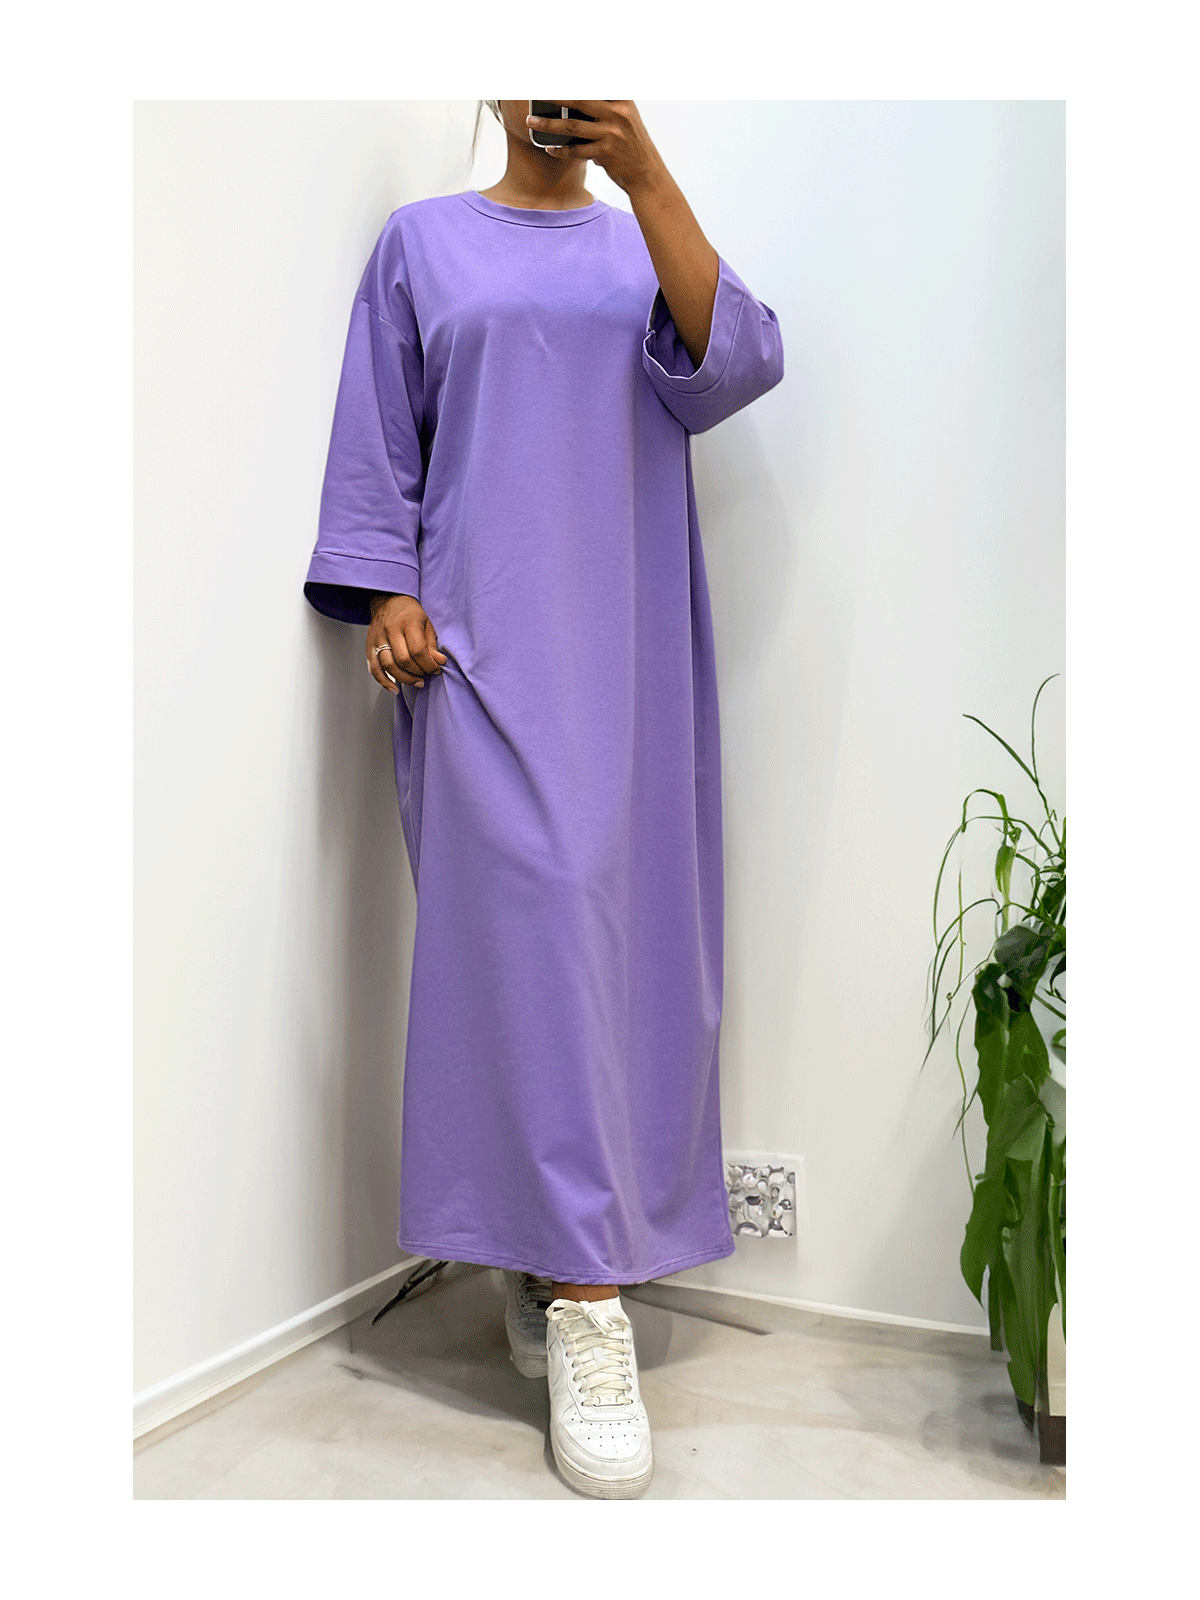 Longue robe over size en coton lilas très épais - 1